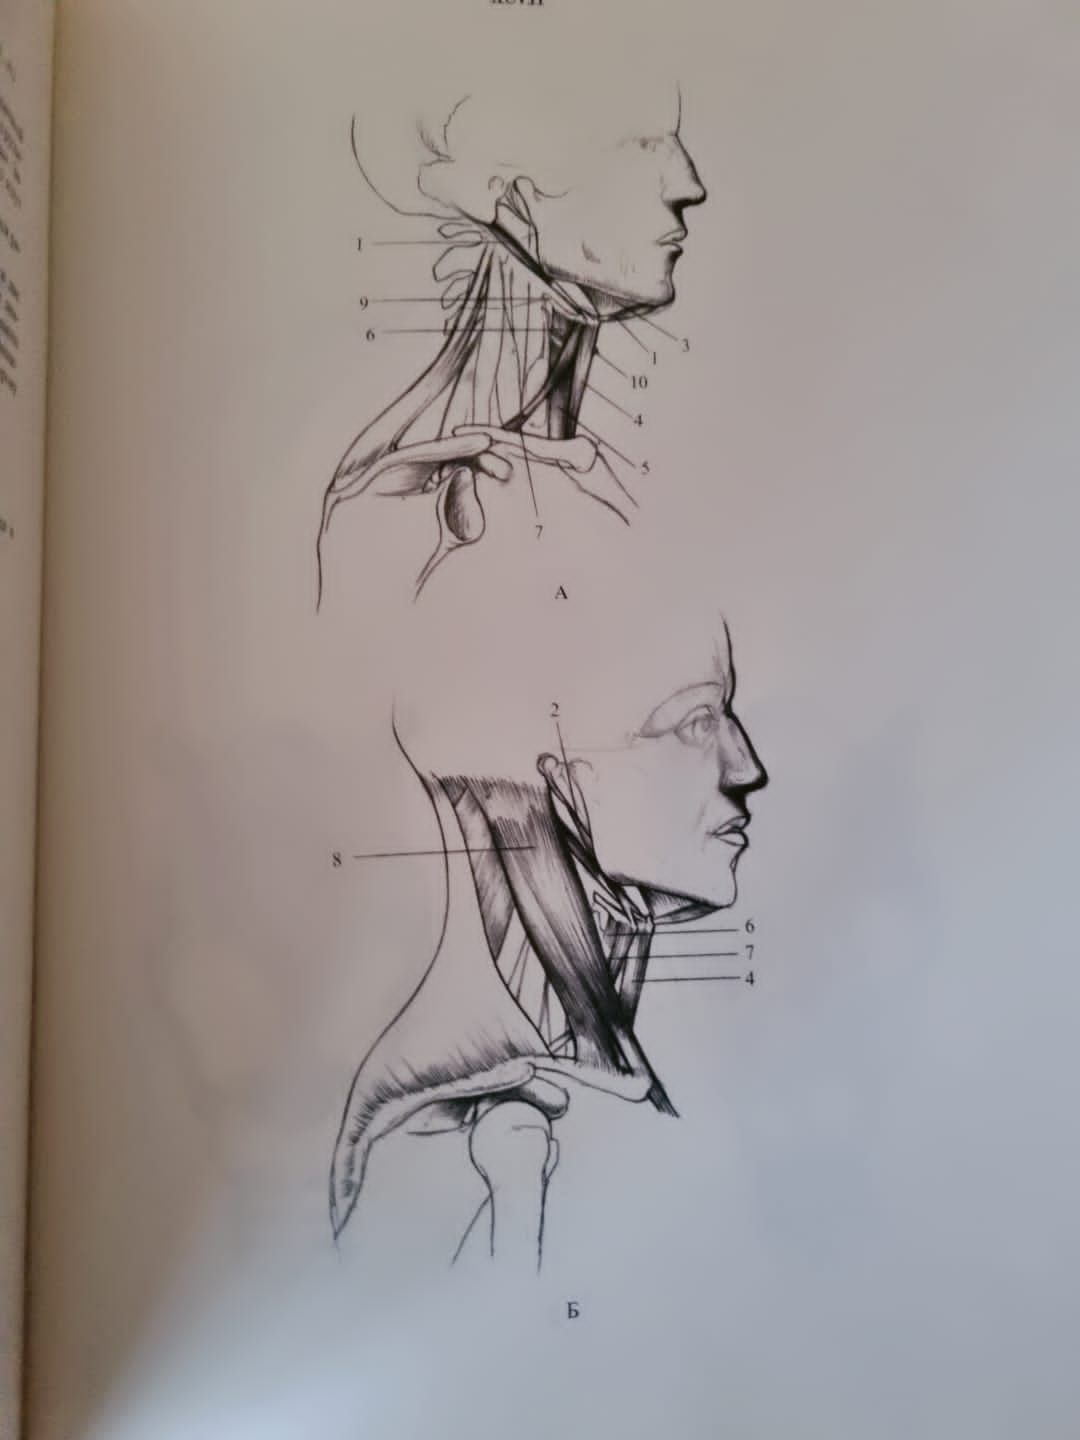 Книга Анатомия для художников Енё Барчаи, 1959 год